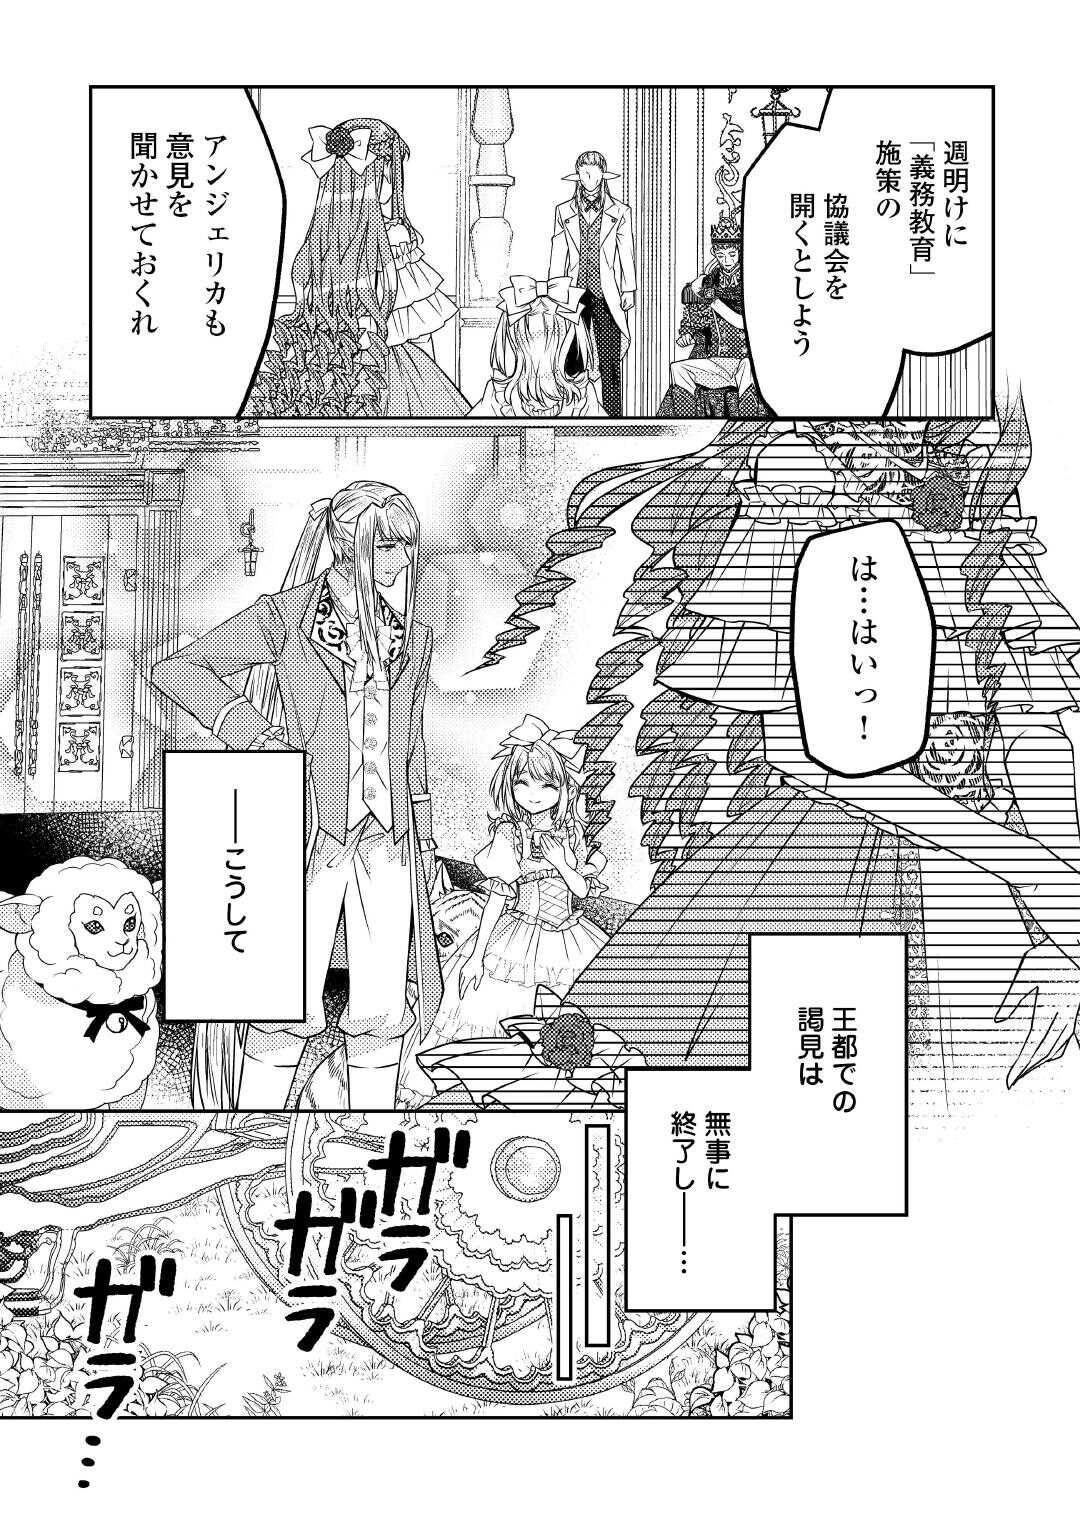 Toaru Chisana Mura No Chi Tona Tanya Ya San - Chapter 20 - Page 7